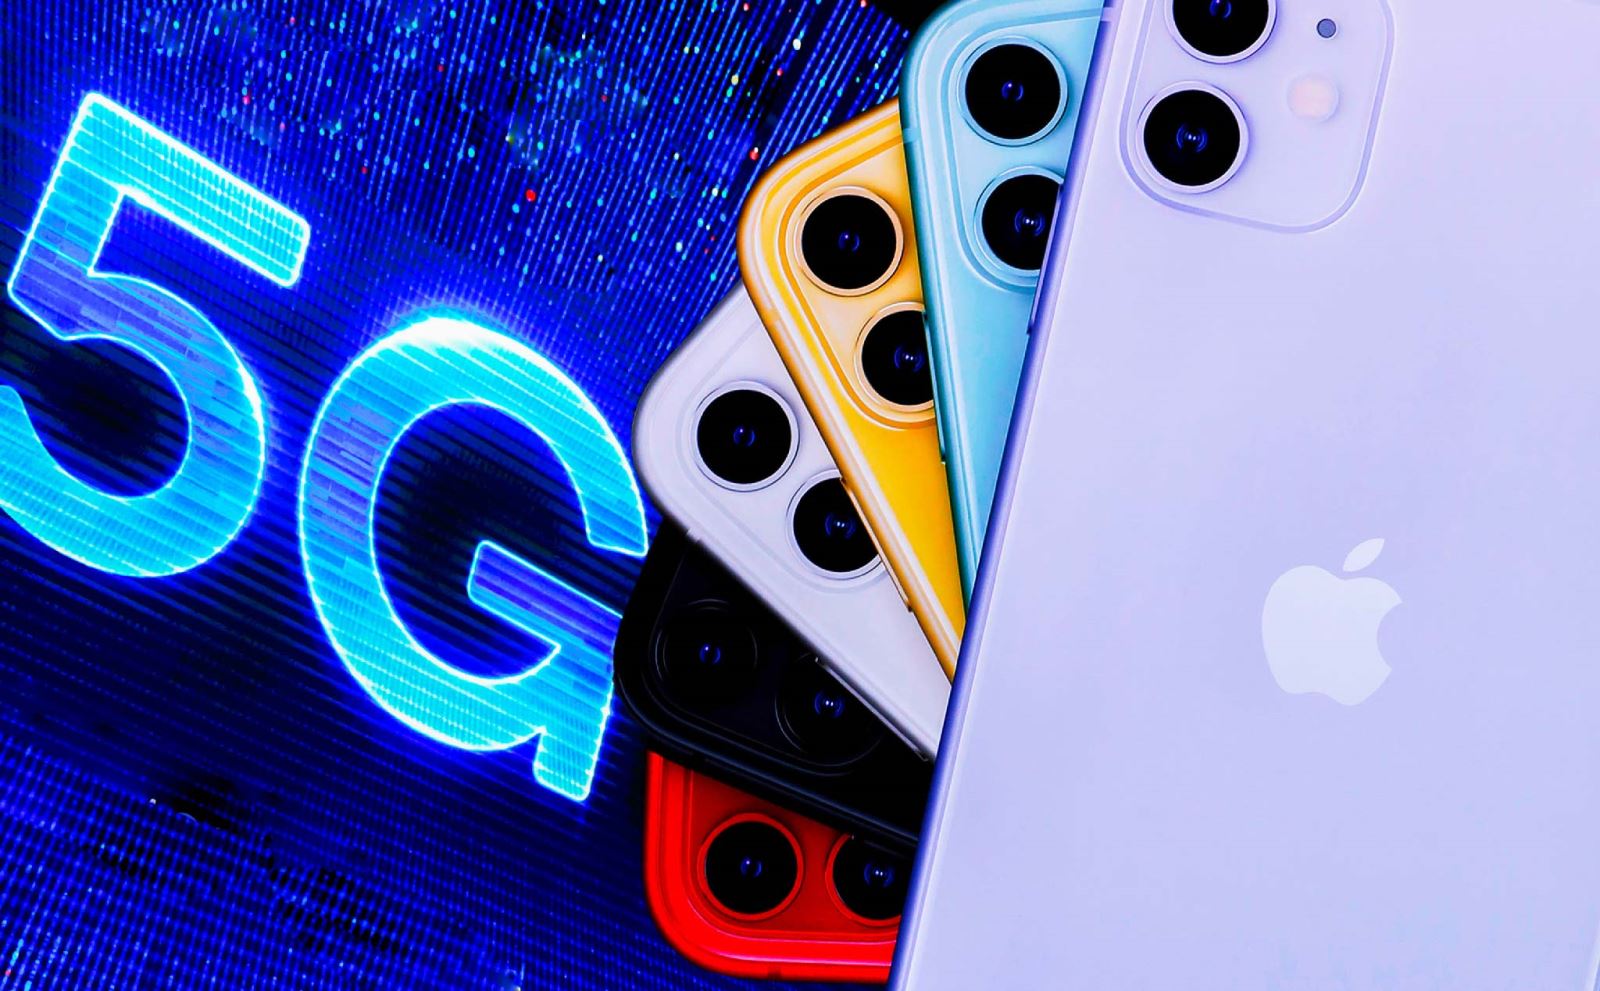  Nhiều nhận định cho rằng Apple sẽ lùi kế hoạch ra mắt các mẫu iPhone 5G đến tháng 10-2020. Ảnh: Getty Images